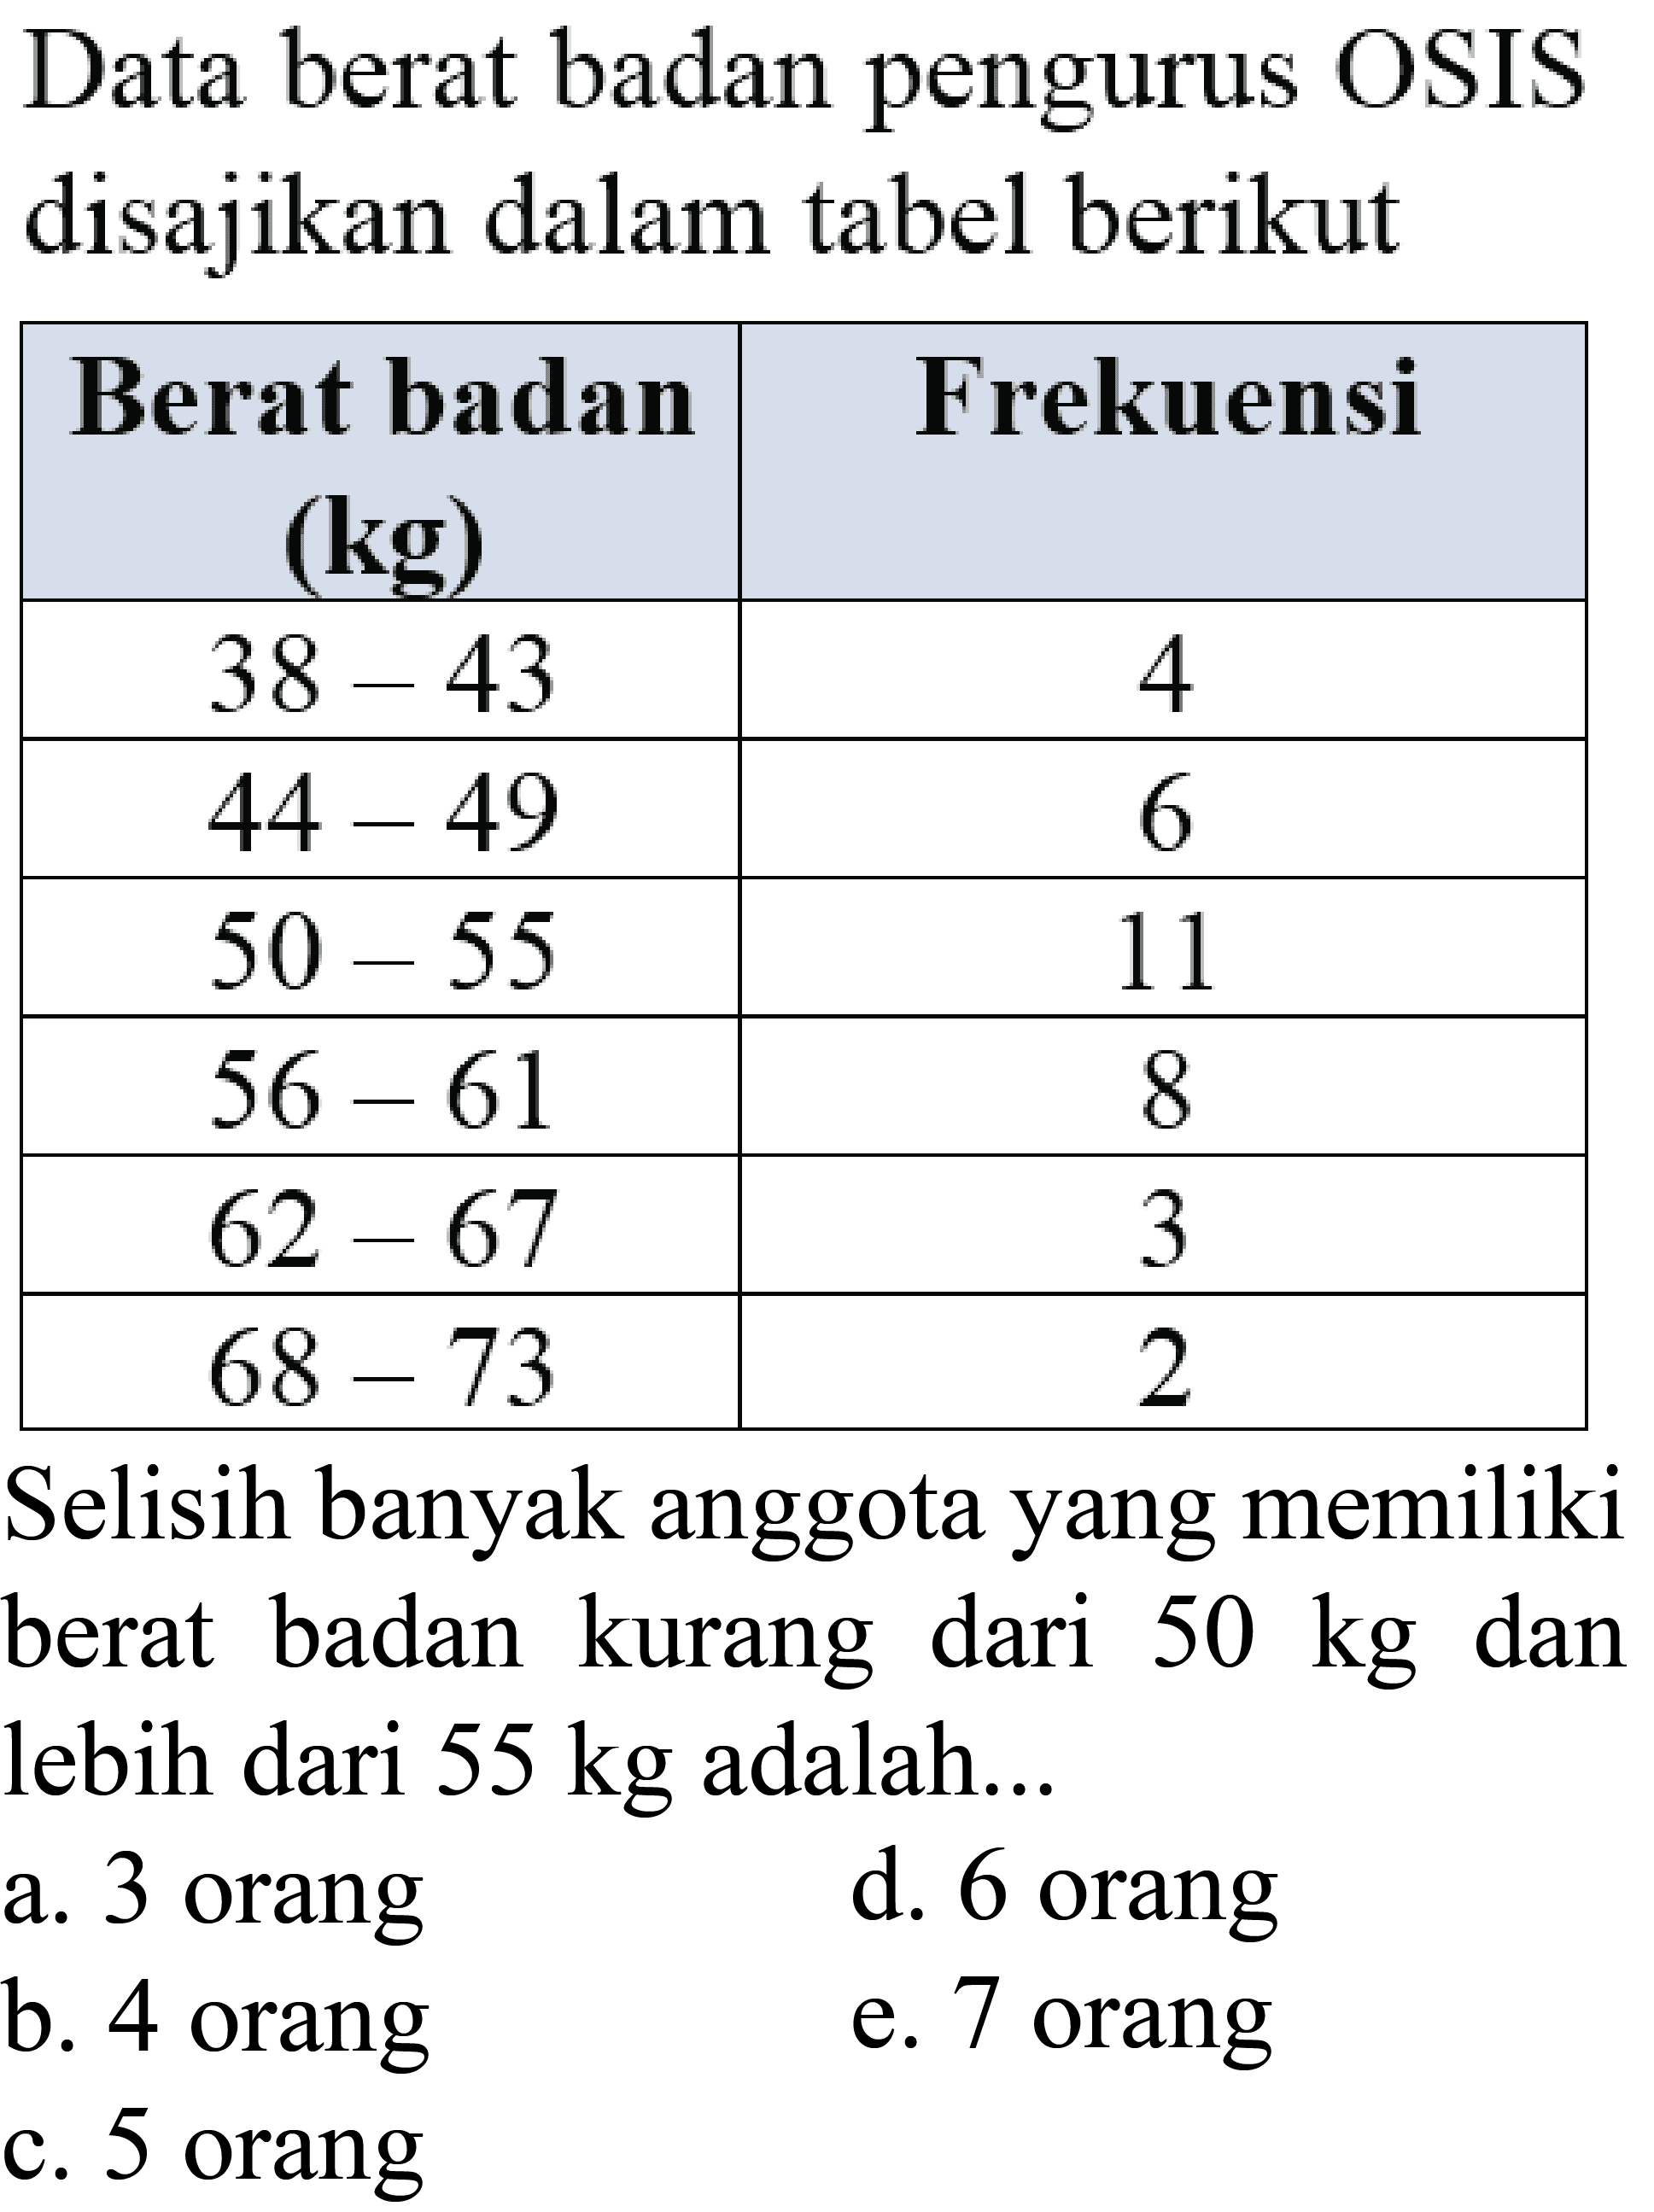 Data berat badan pengurus OSIS disajikan dalam tabel berikut 
Berat badan (kg) Frekuensi 38-43 4 44-49 6 50-55 11 56-61 8 62-67 3 68-73 2 Selisih banyak anggota yang memiliki berat badan kurang dari 50 kg dan lebih dari 55 kg adalah ... 